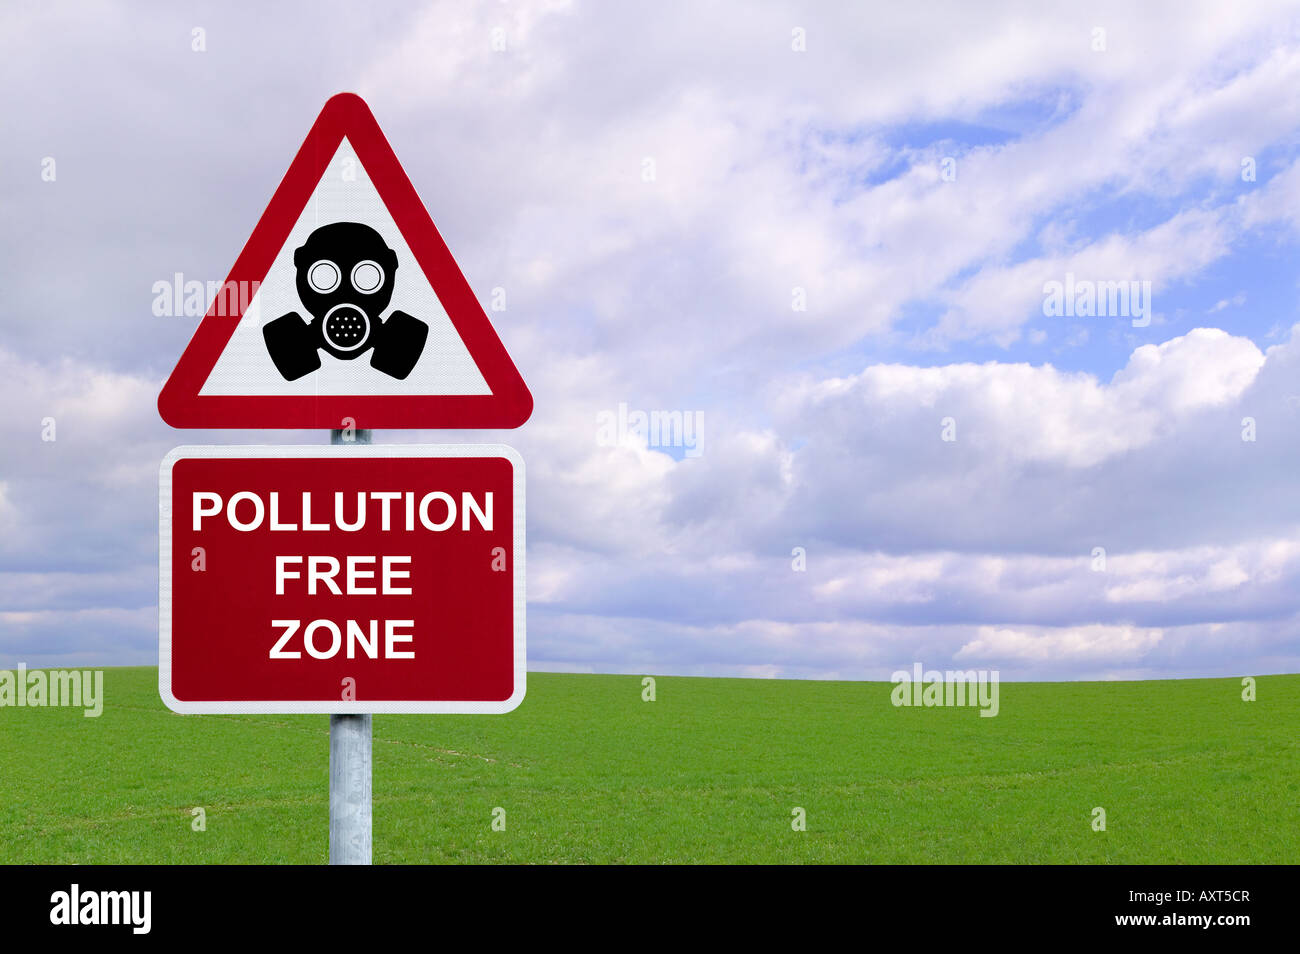 Bild eines Zeichens für eine Verschmutzung freie Zone gegen ein grünes Feld und blauer bewölkten Himmel Umwelt- und Naturschutz Konzepte Stockfoto